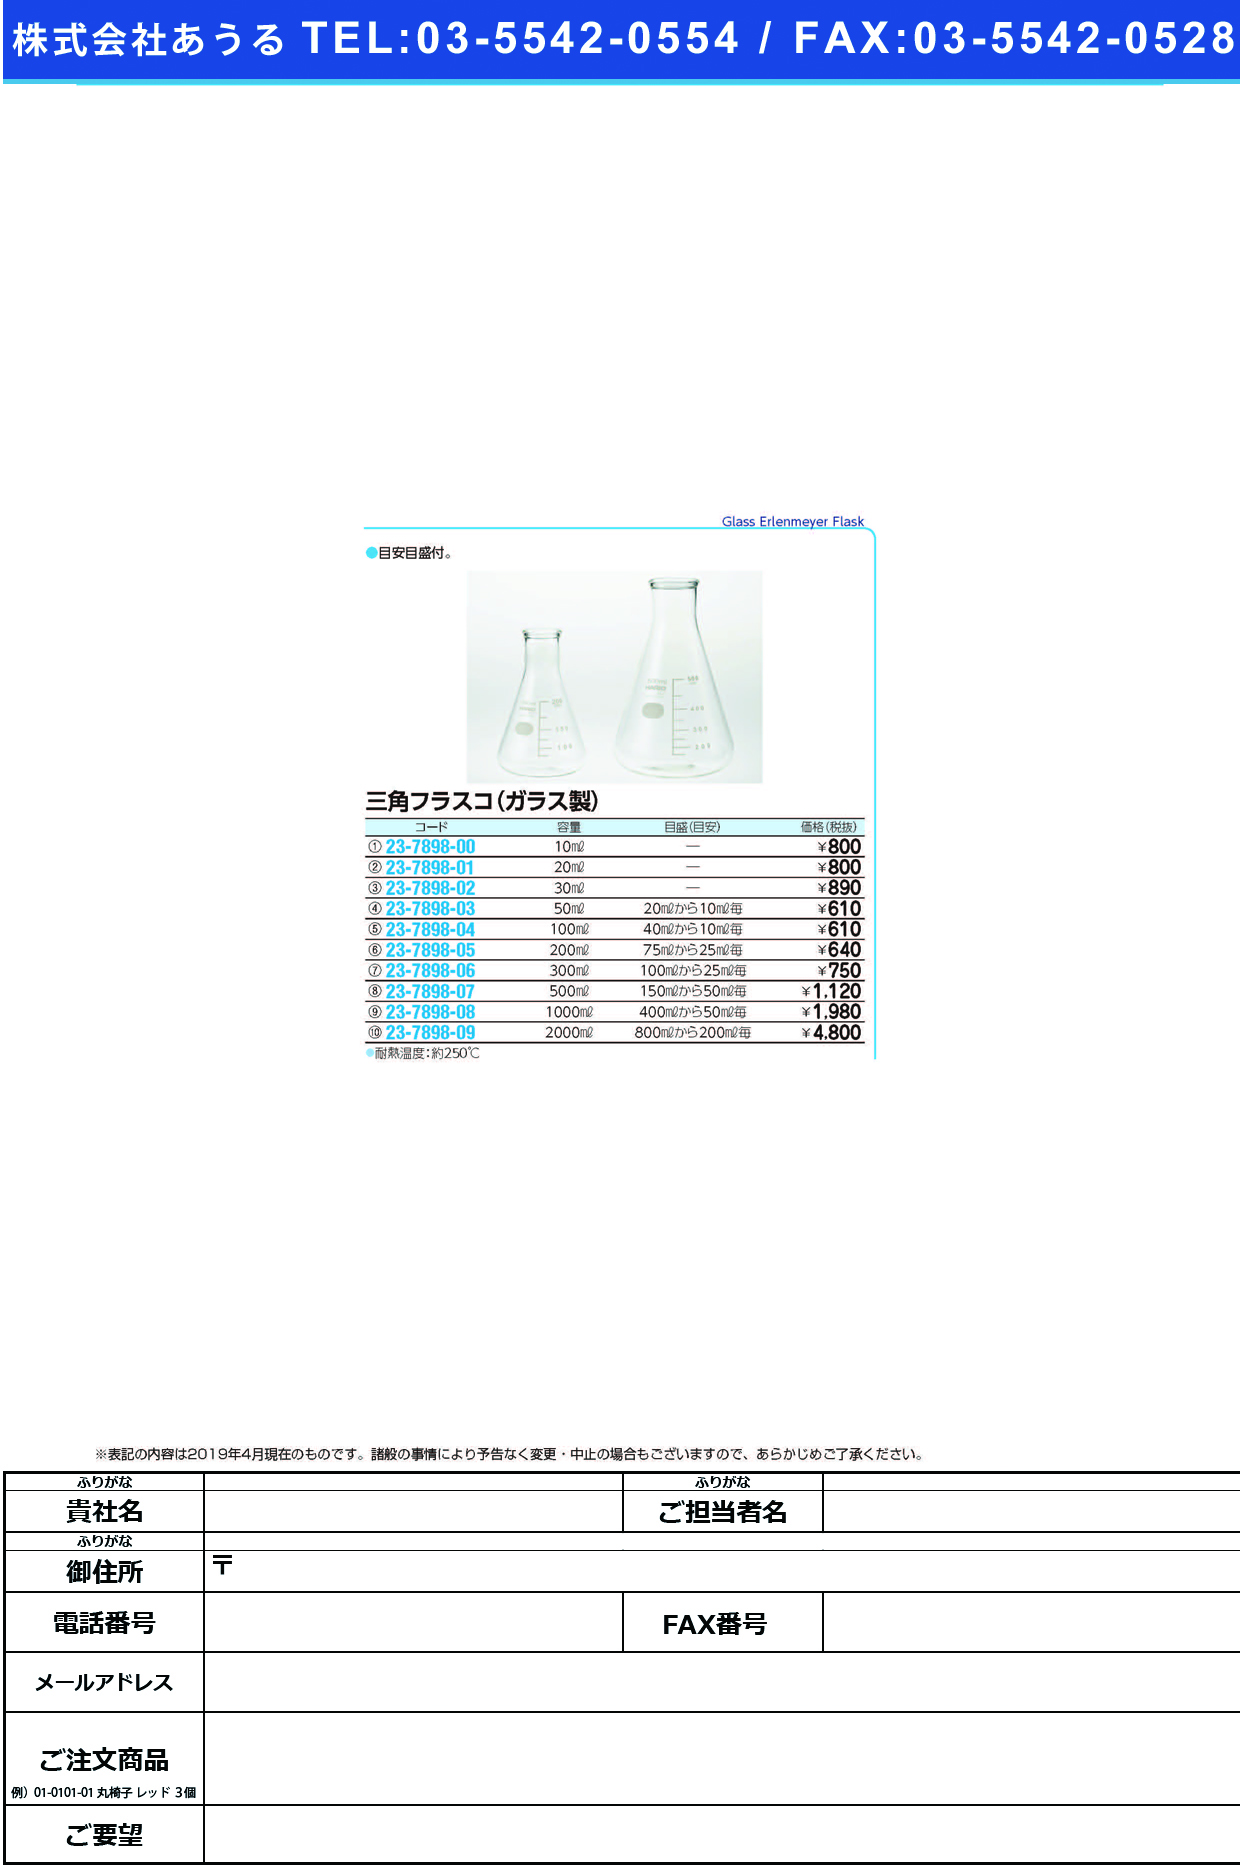 (23-7898-04)三角フラスコ（ガラス製） 100ML ｻﾝｶｸﾌﾗｽｺ(ｶﾞﾗｽｾｲ)【1個単位】【2019年カタログ商品】